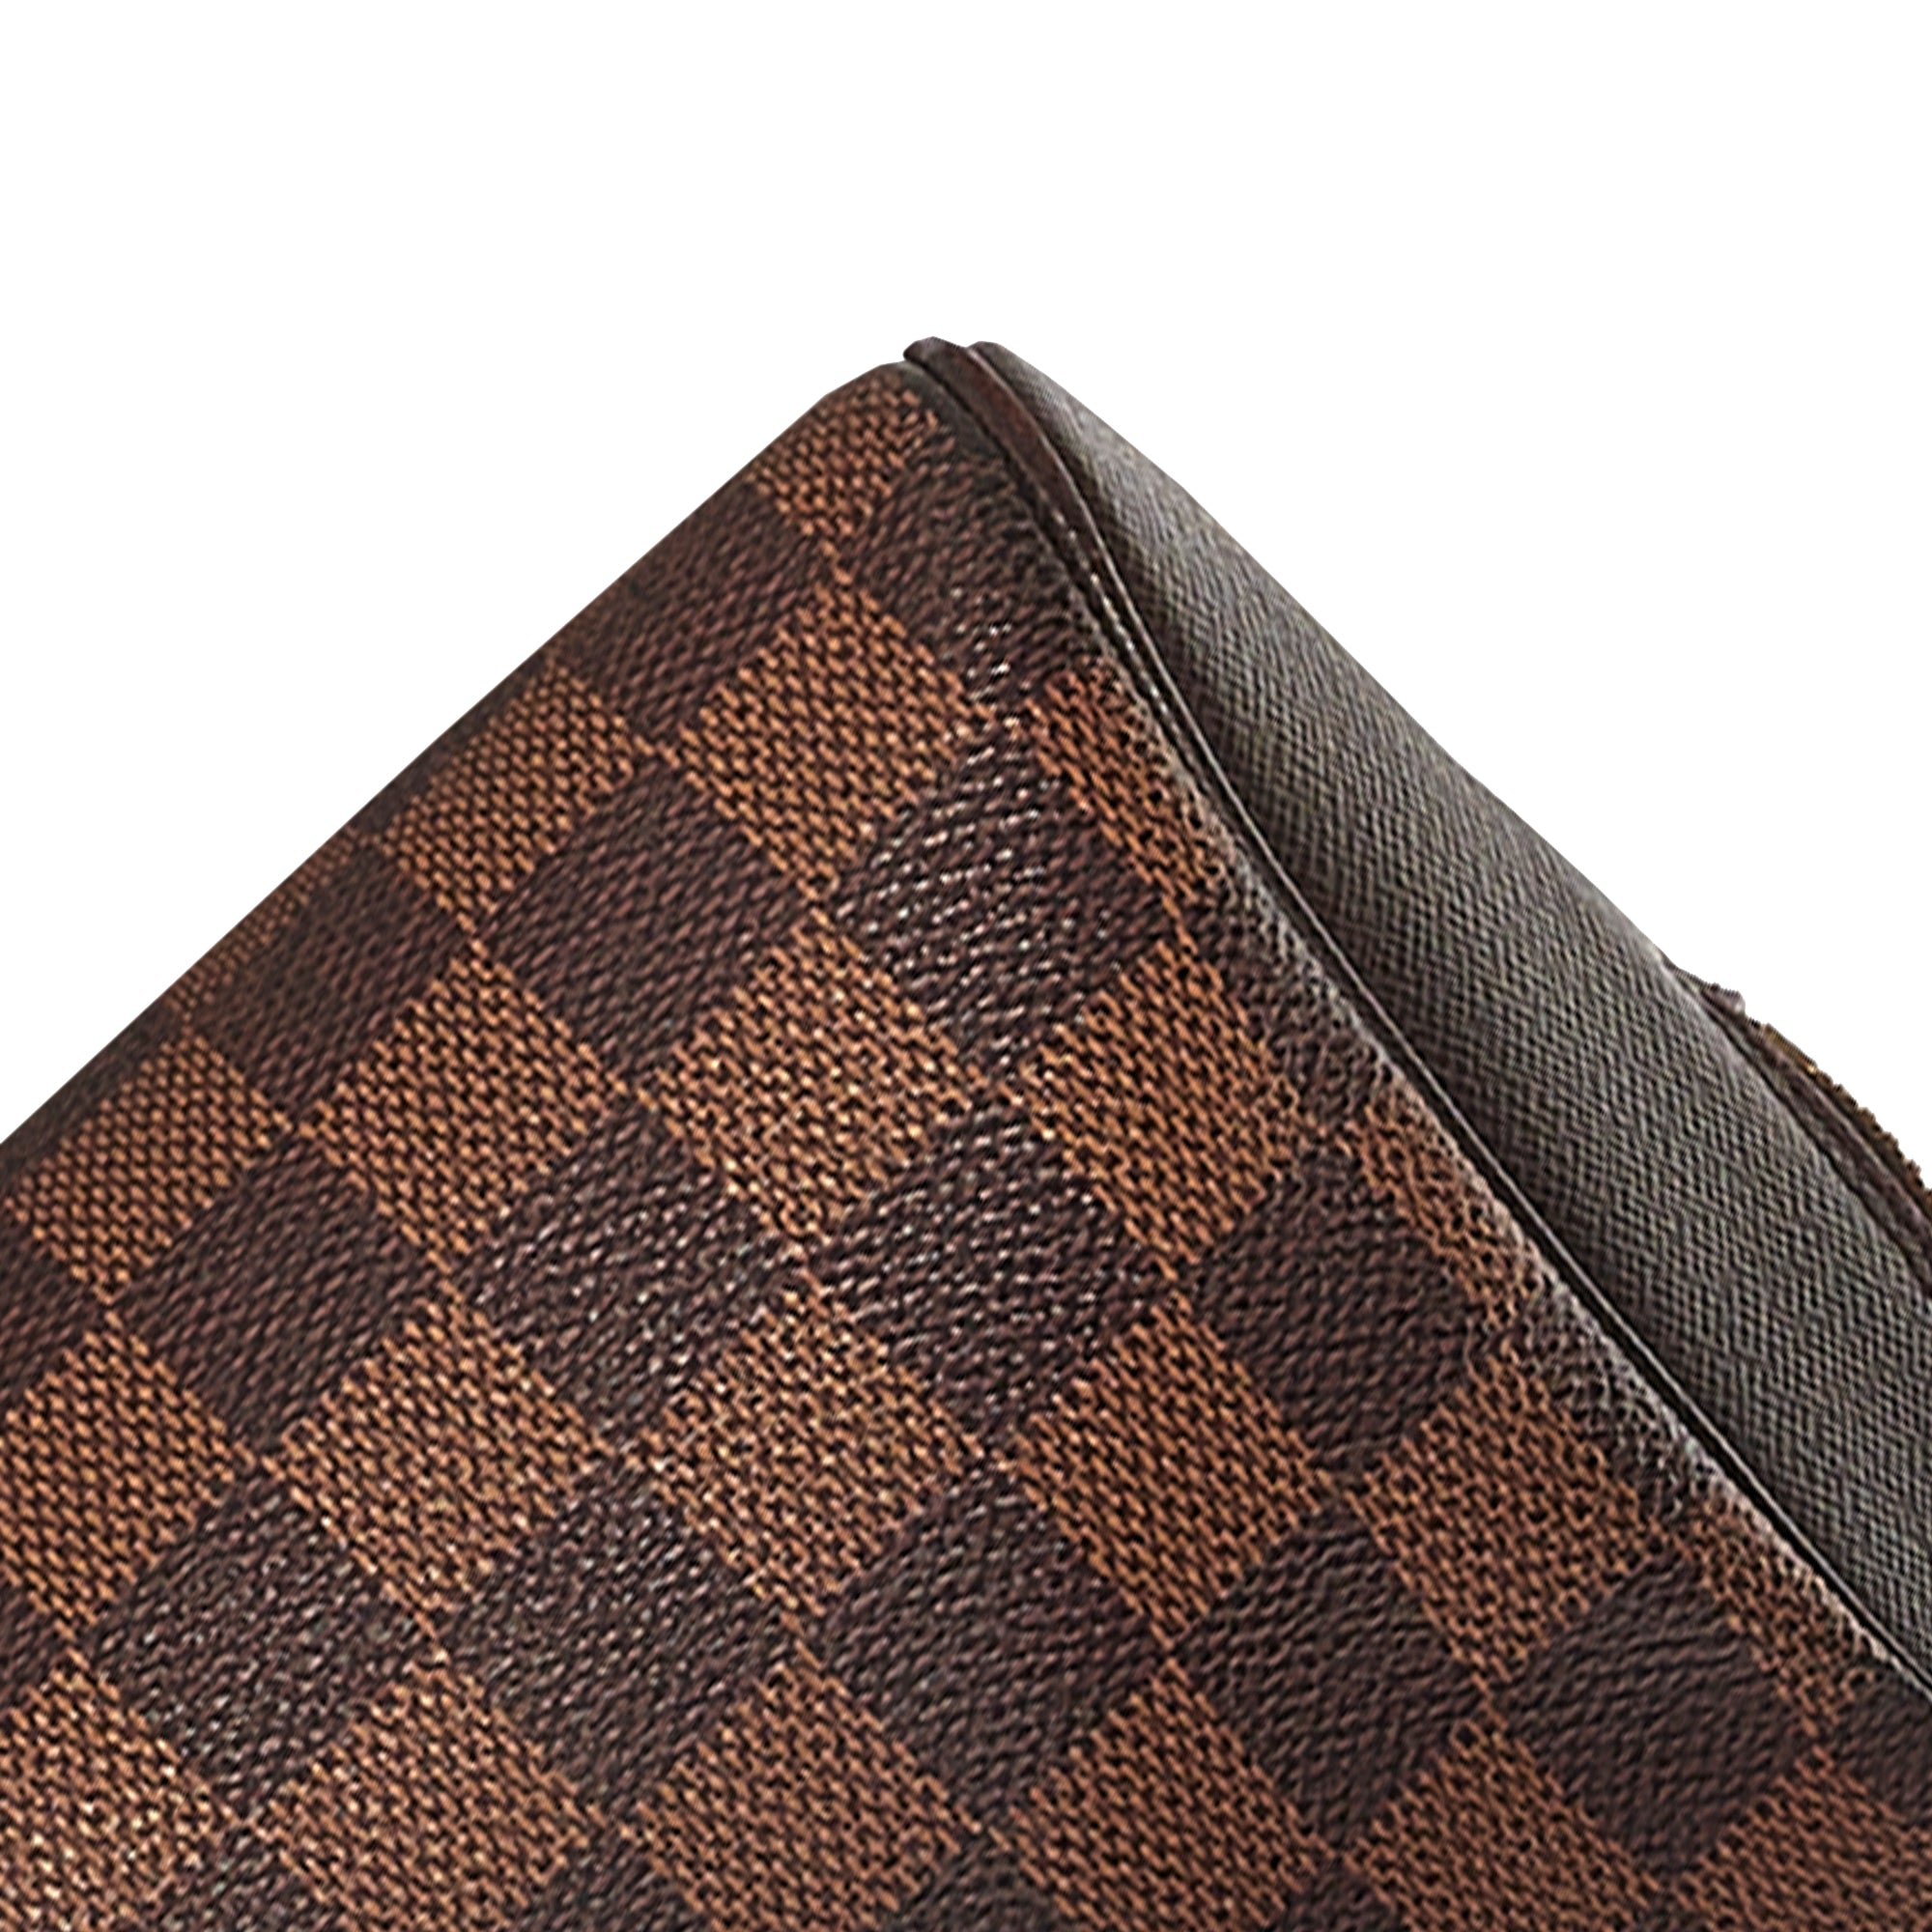 Shop Louis Vuitton Handbags (M21797, M21720) by LESSISMORE☆